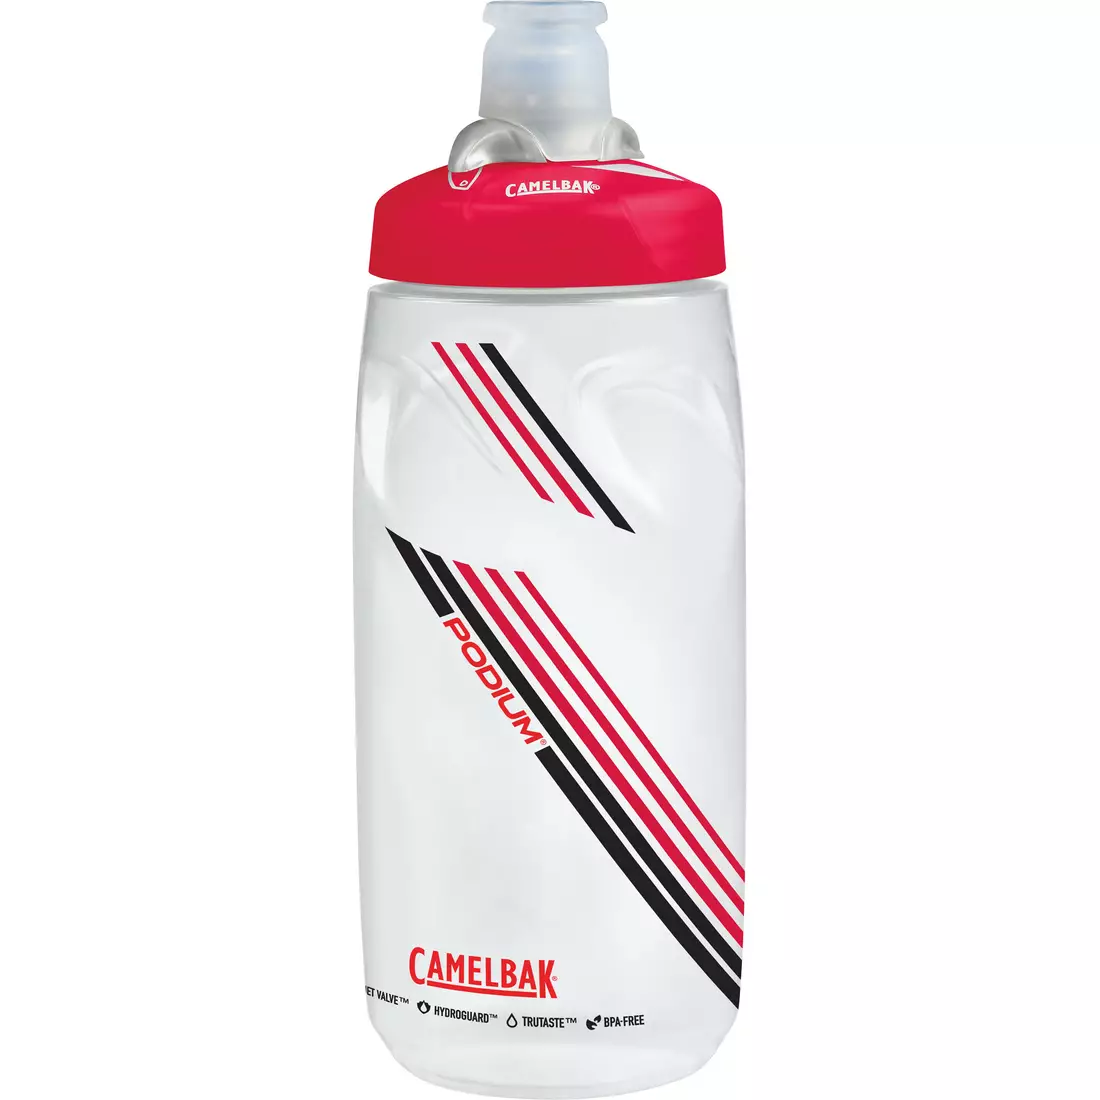 Camelbak SS17 Podium kerékpáros vizes palack 21oz / 620 ml Clear Red